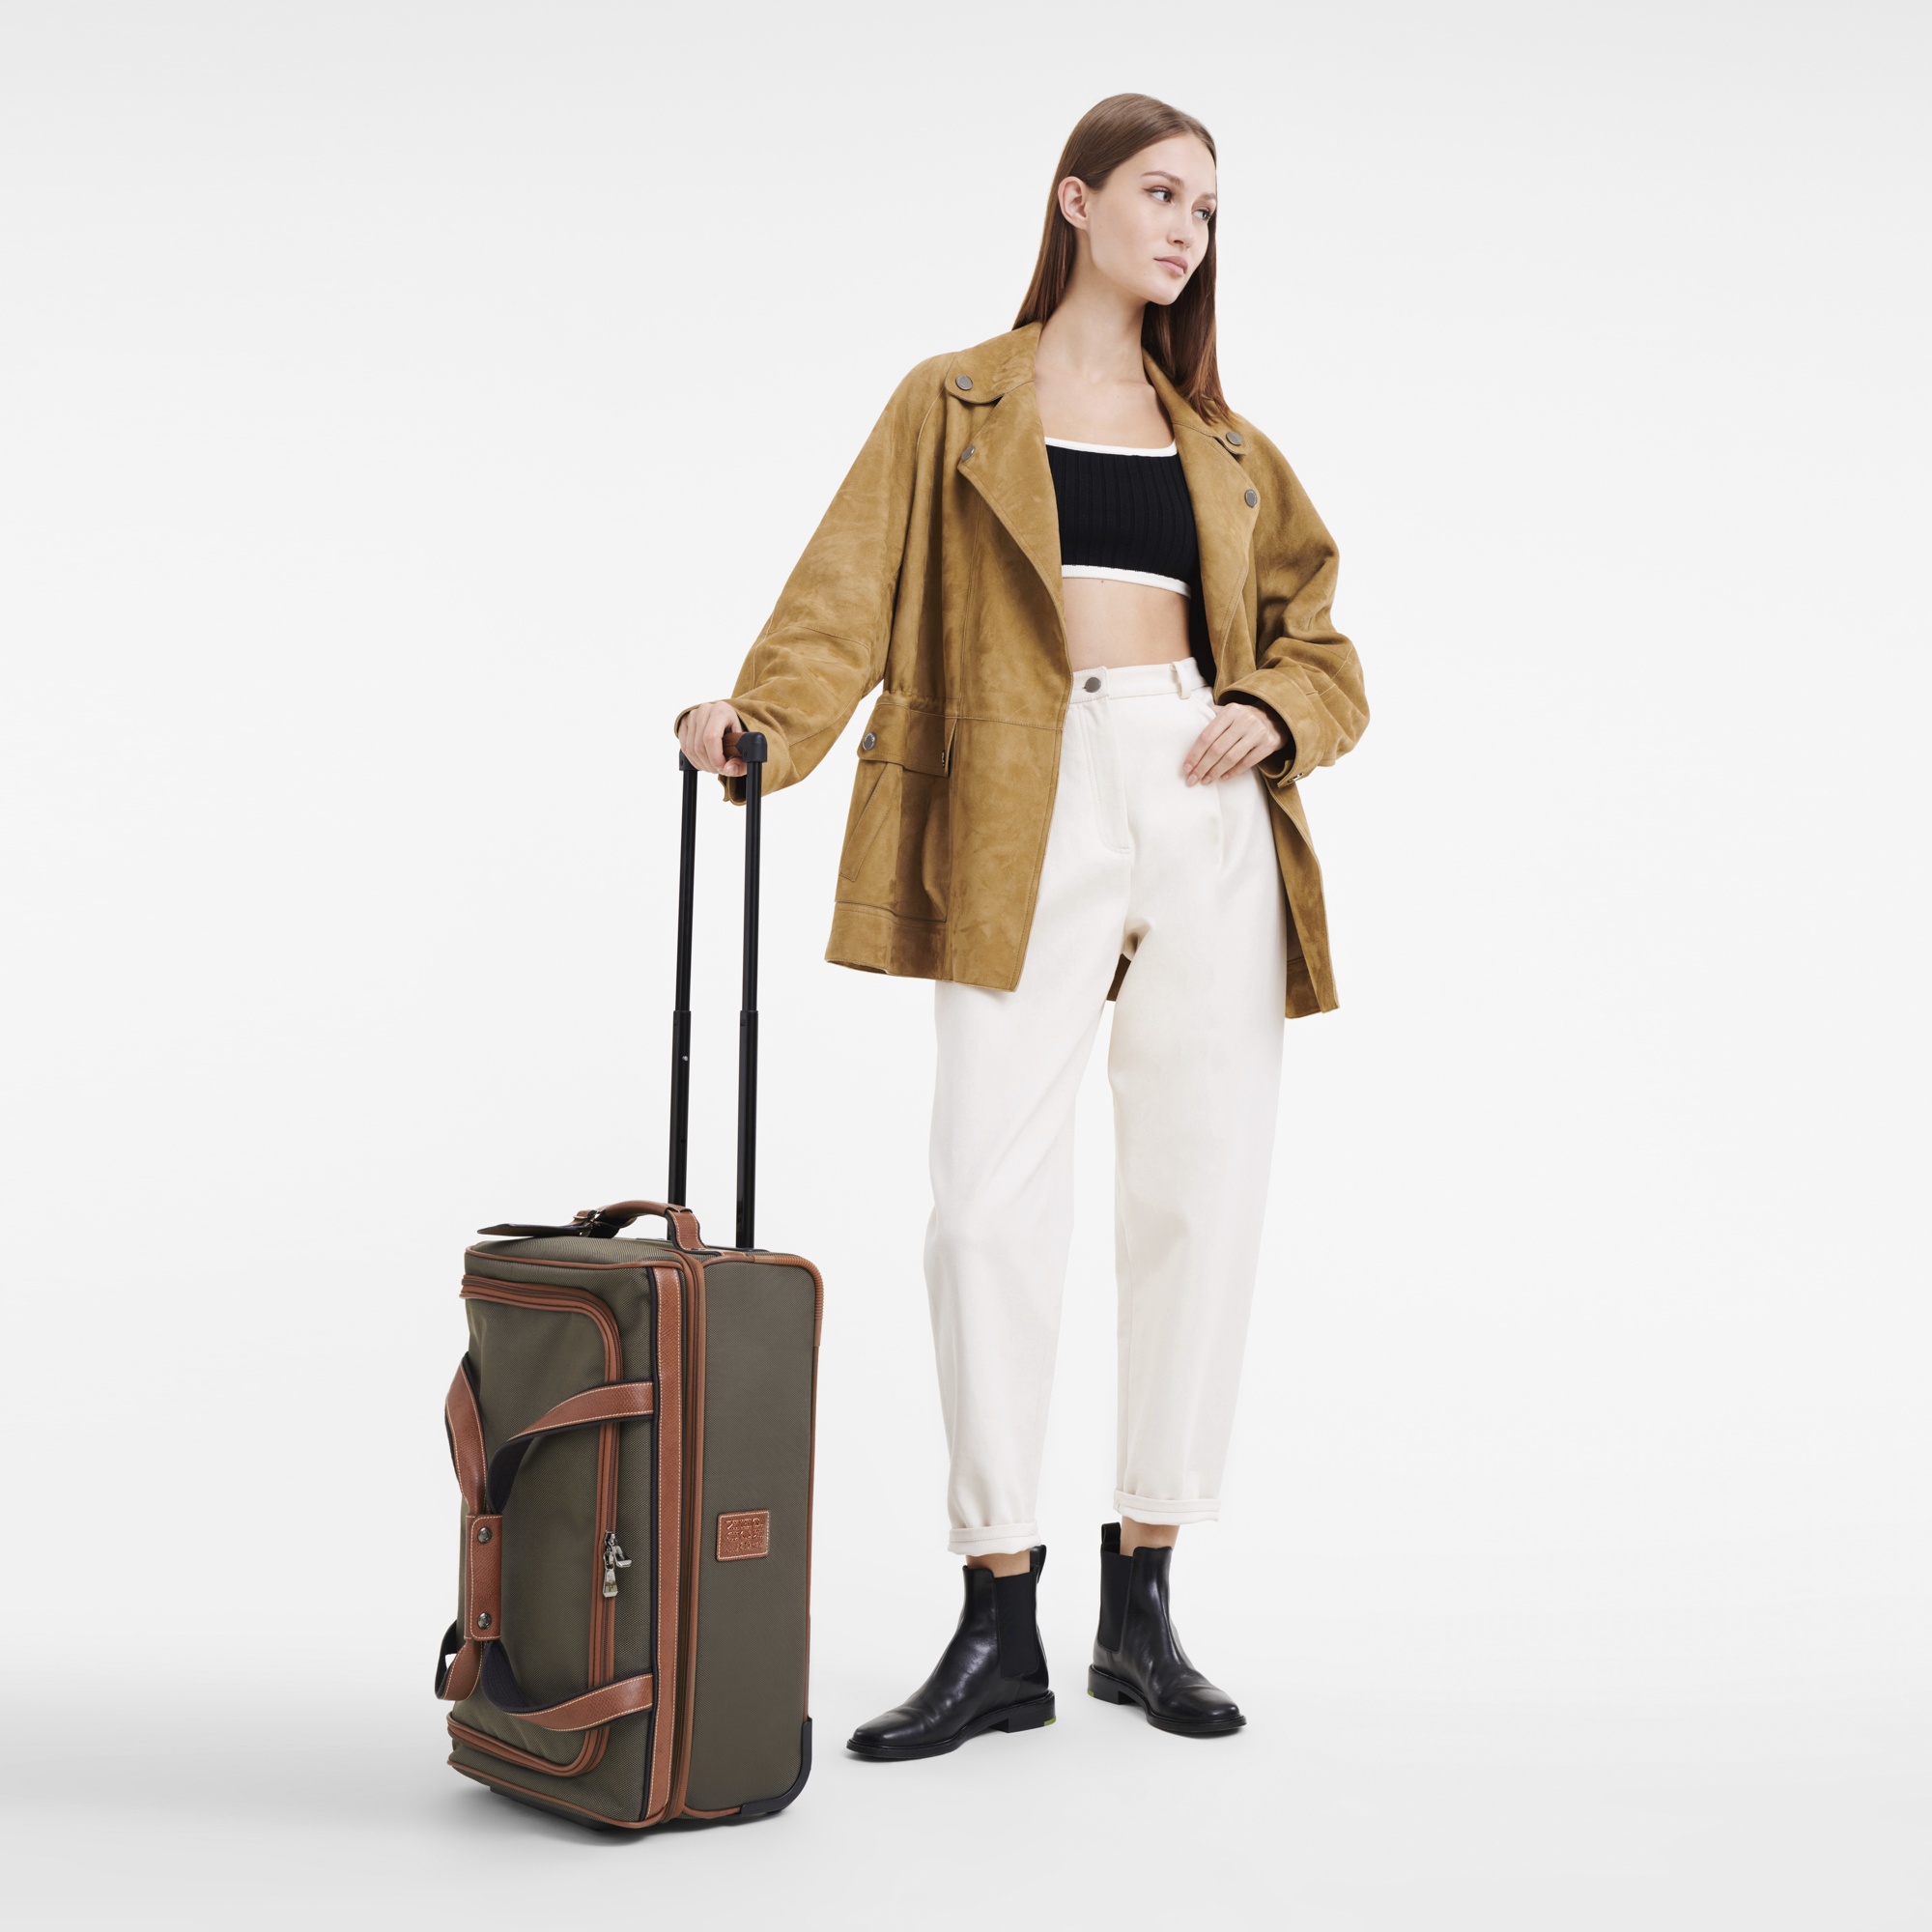 Longchamp Boxford M Travel bag Brown - Canvas